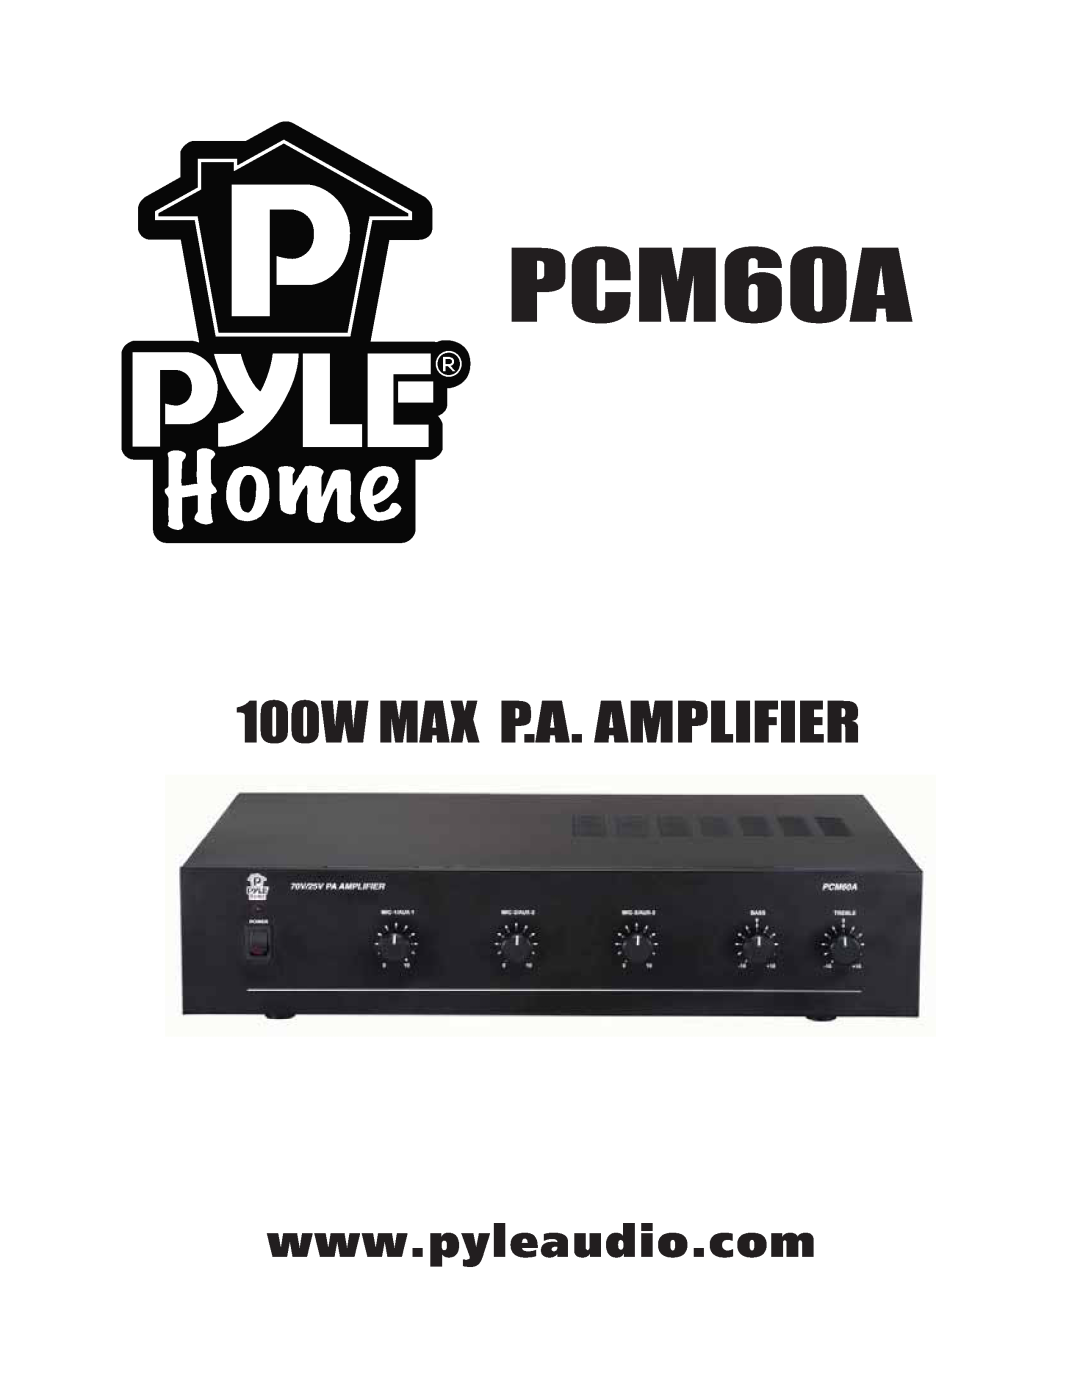 PYLE Audio PCM60A manual 100W MAX P.A. AMPLIFIER 